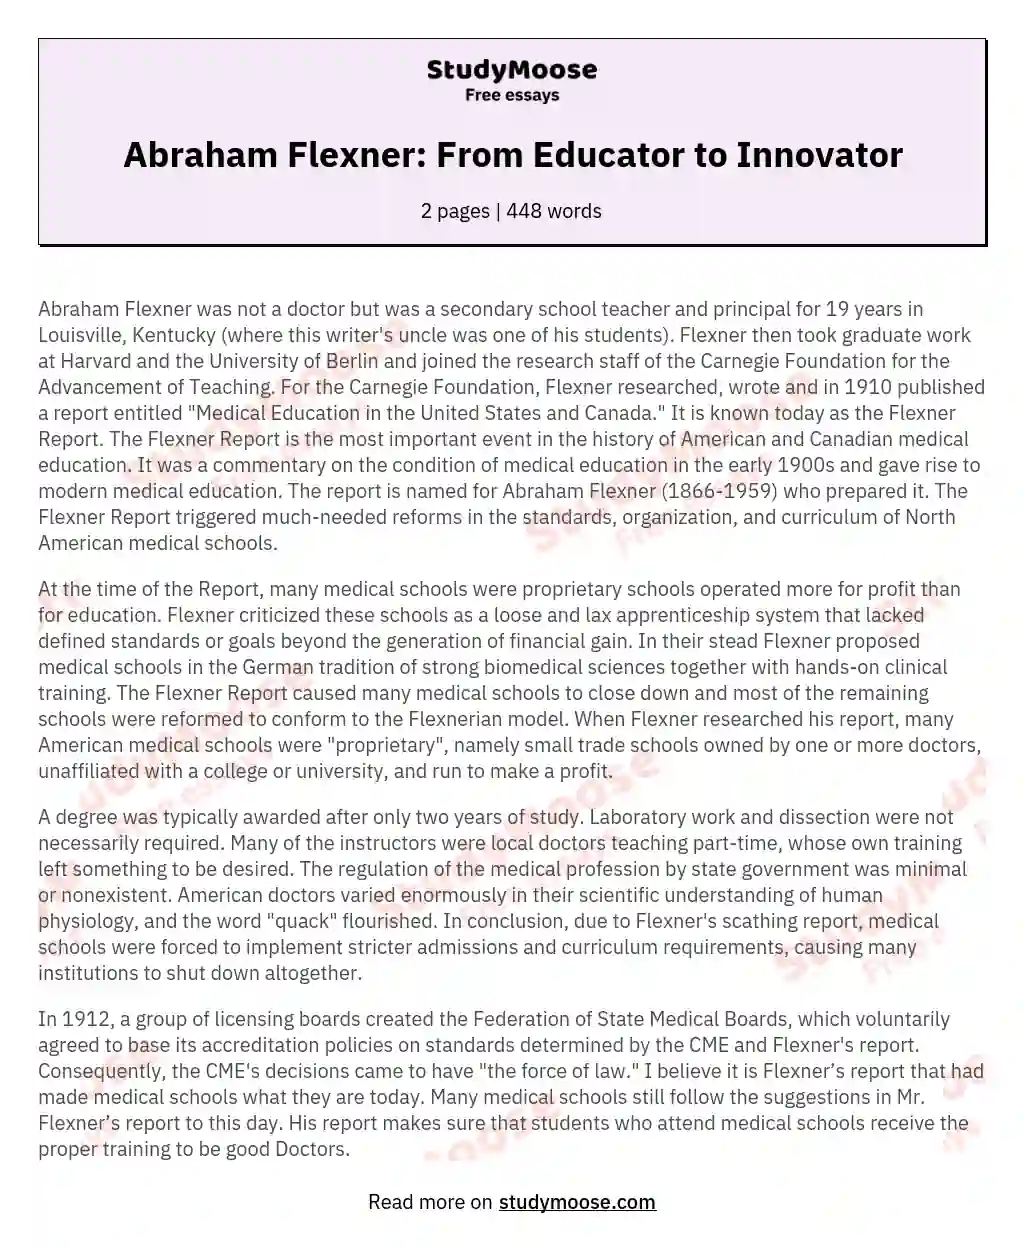 Abraham Flexner: From Educator to Innovator essay